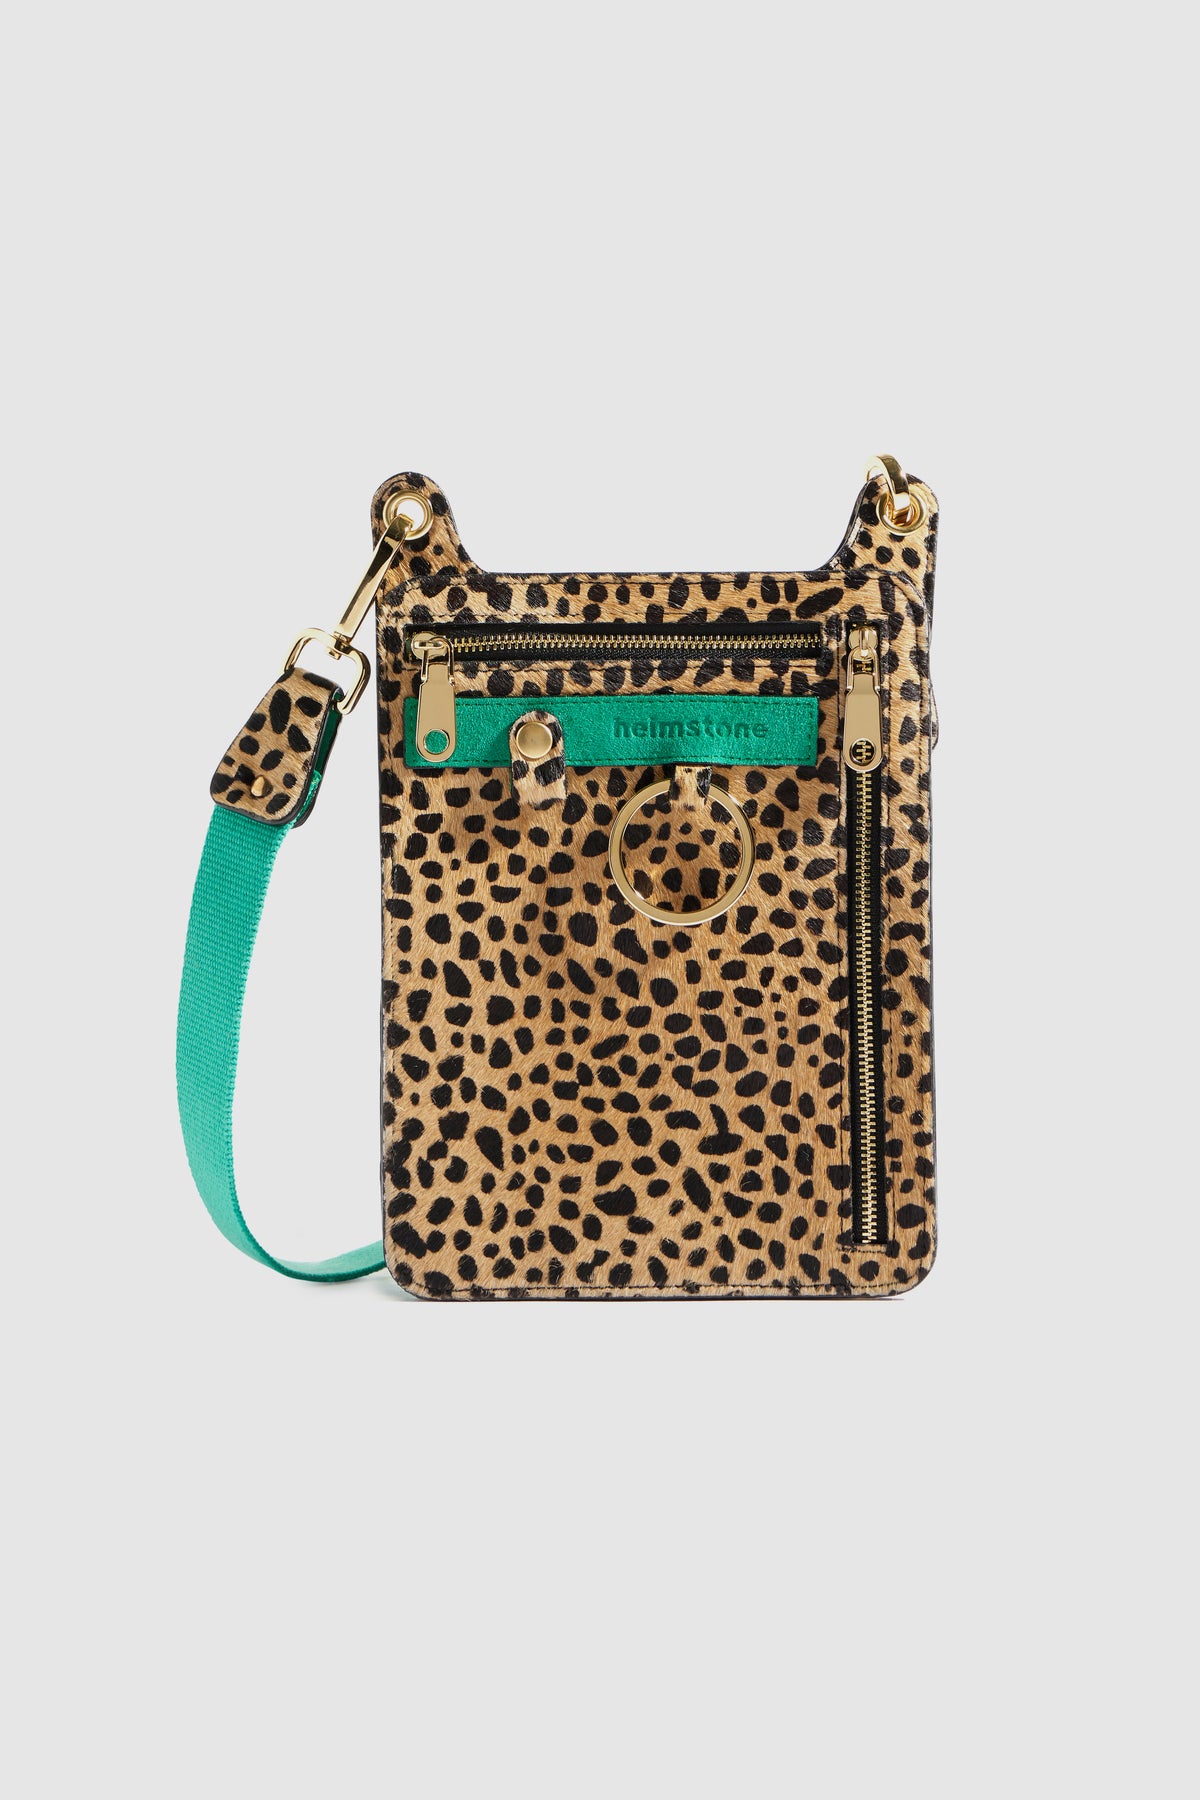 Stanley satchel in Cheetah printed leather